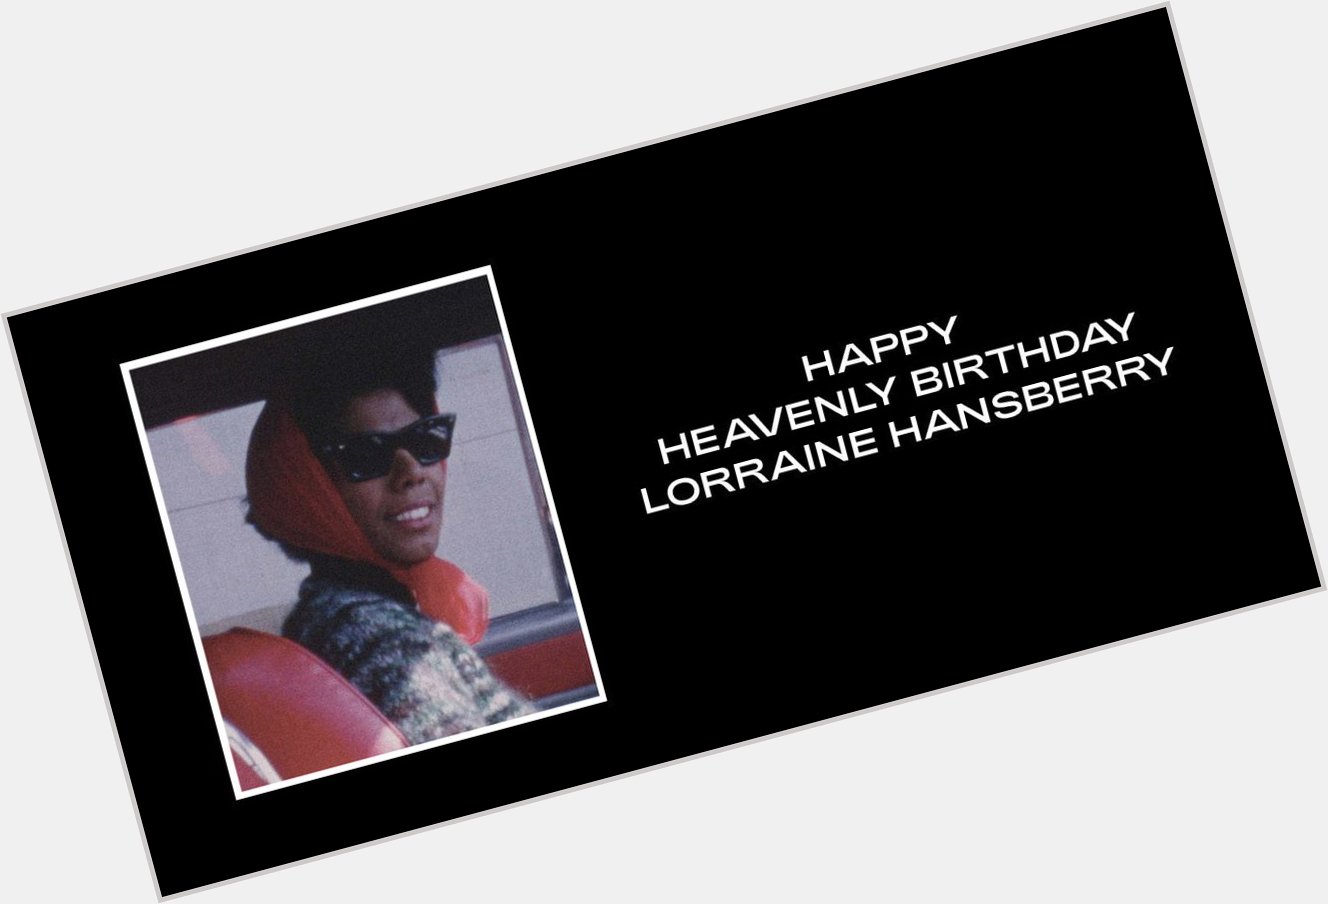 Happy Heavenly Birthday Lorraine Hansberry via  